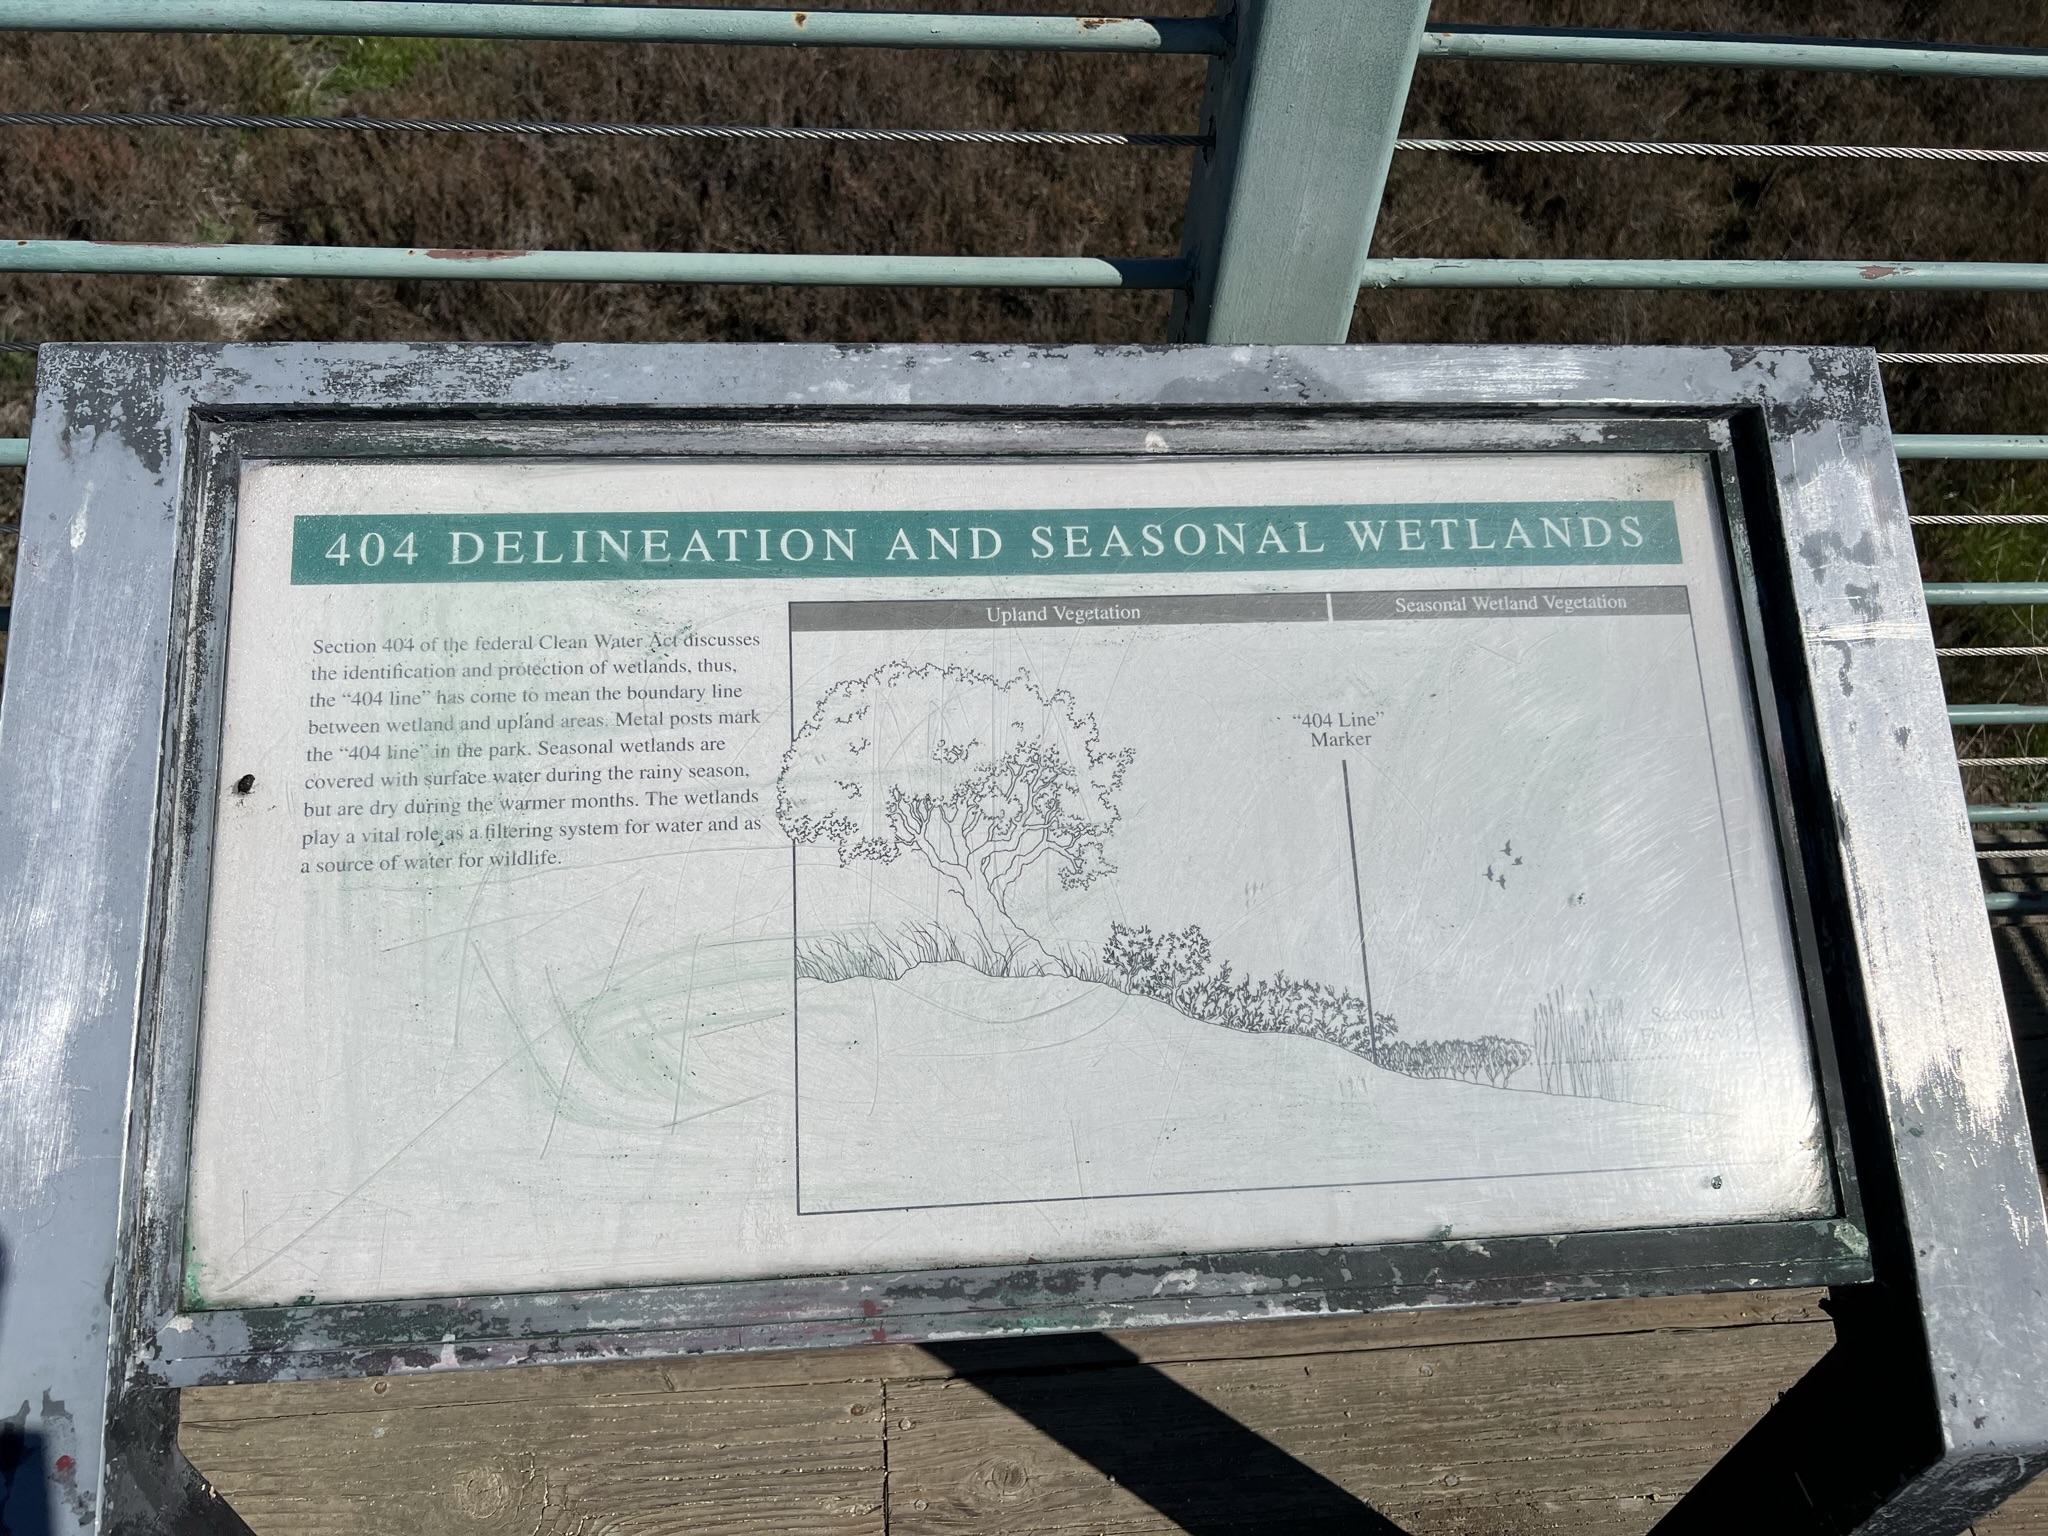 为了保护湿地，公园特地设置了栅栏